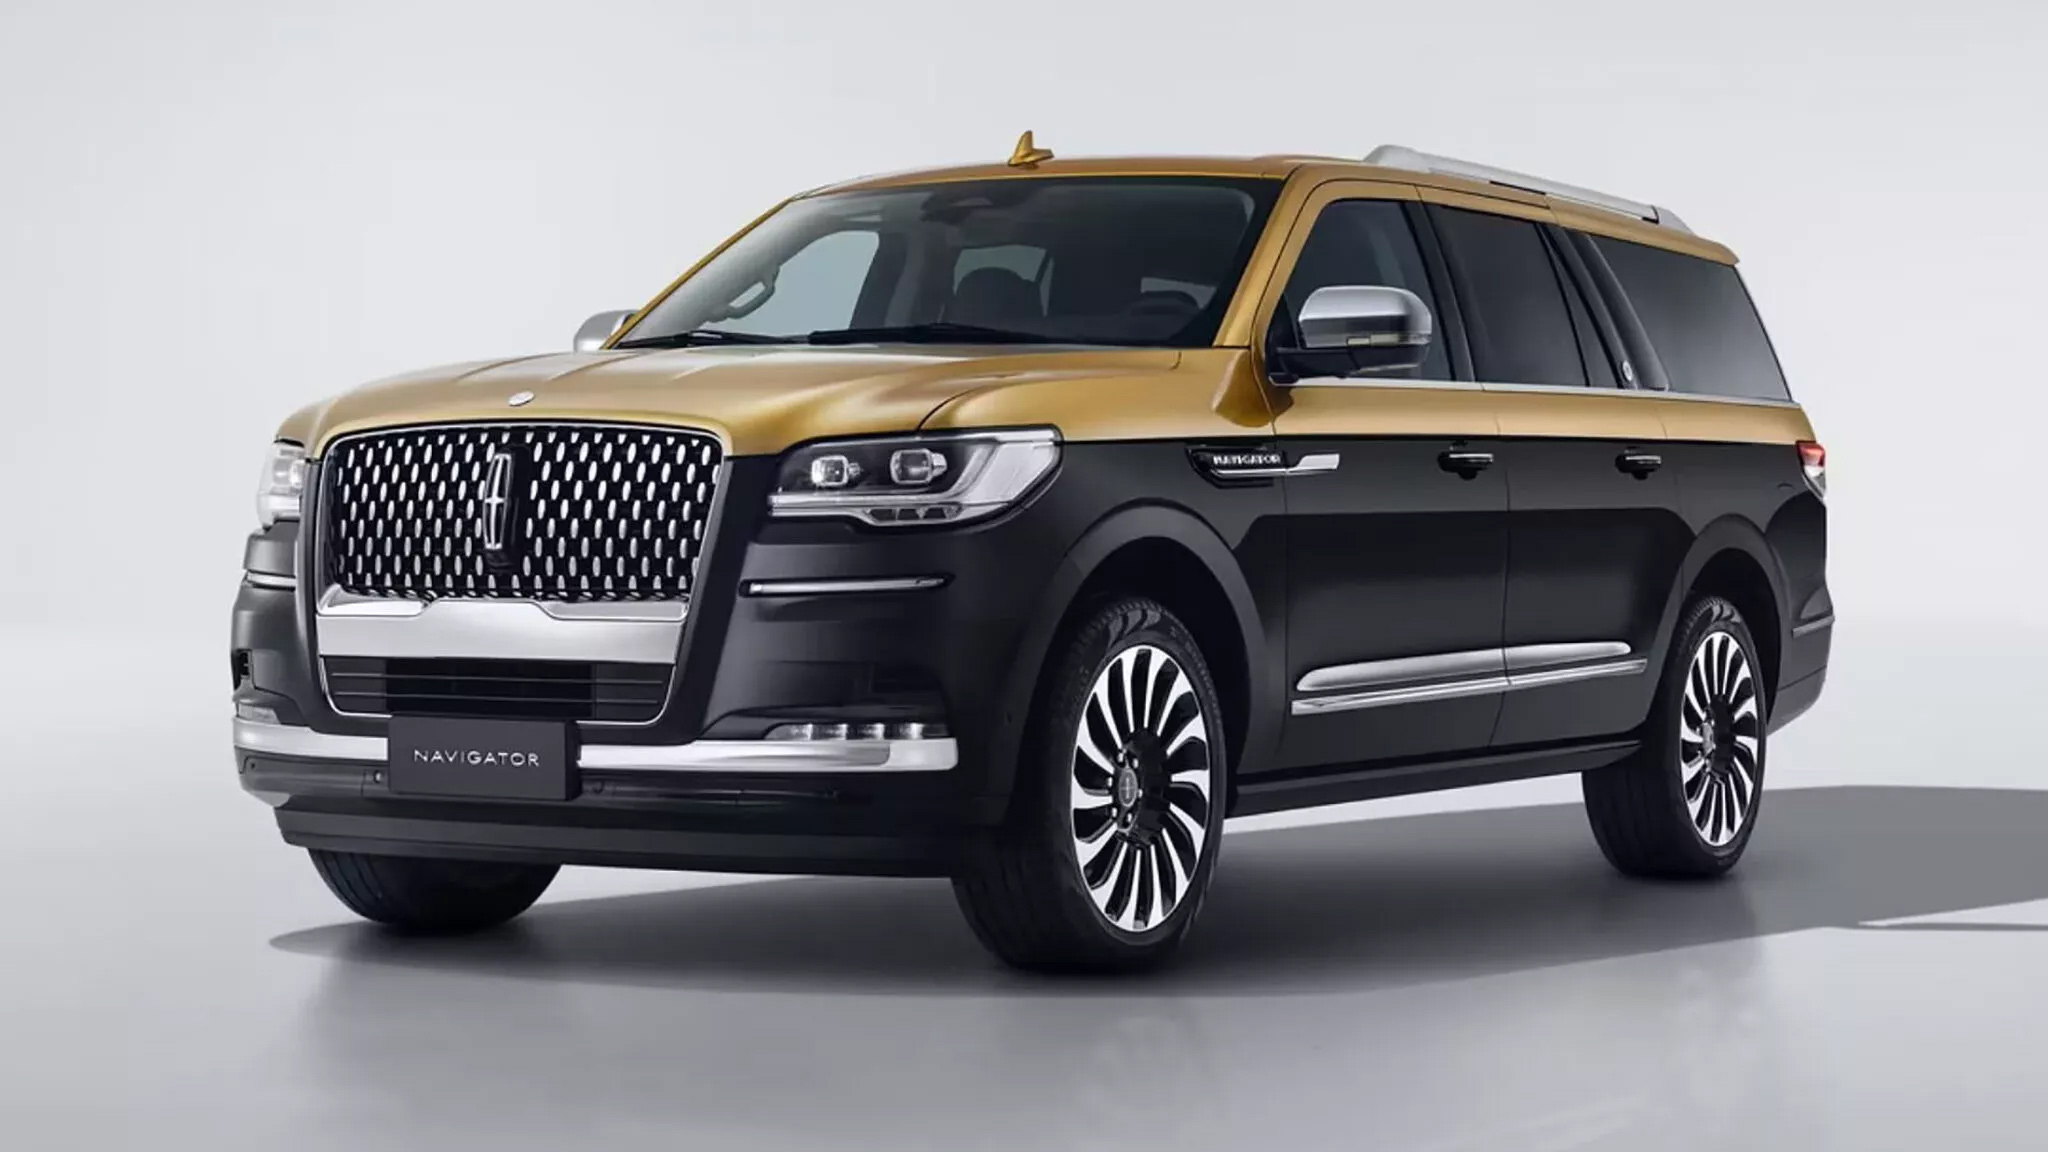 Lincoln Navigator phiên bản đặc biệt Black Gold Edition dành cho giới nhà giàu